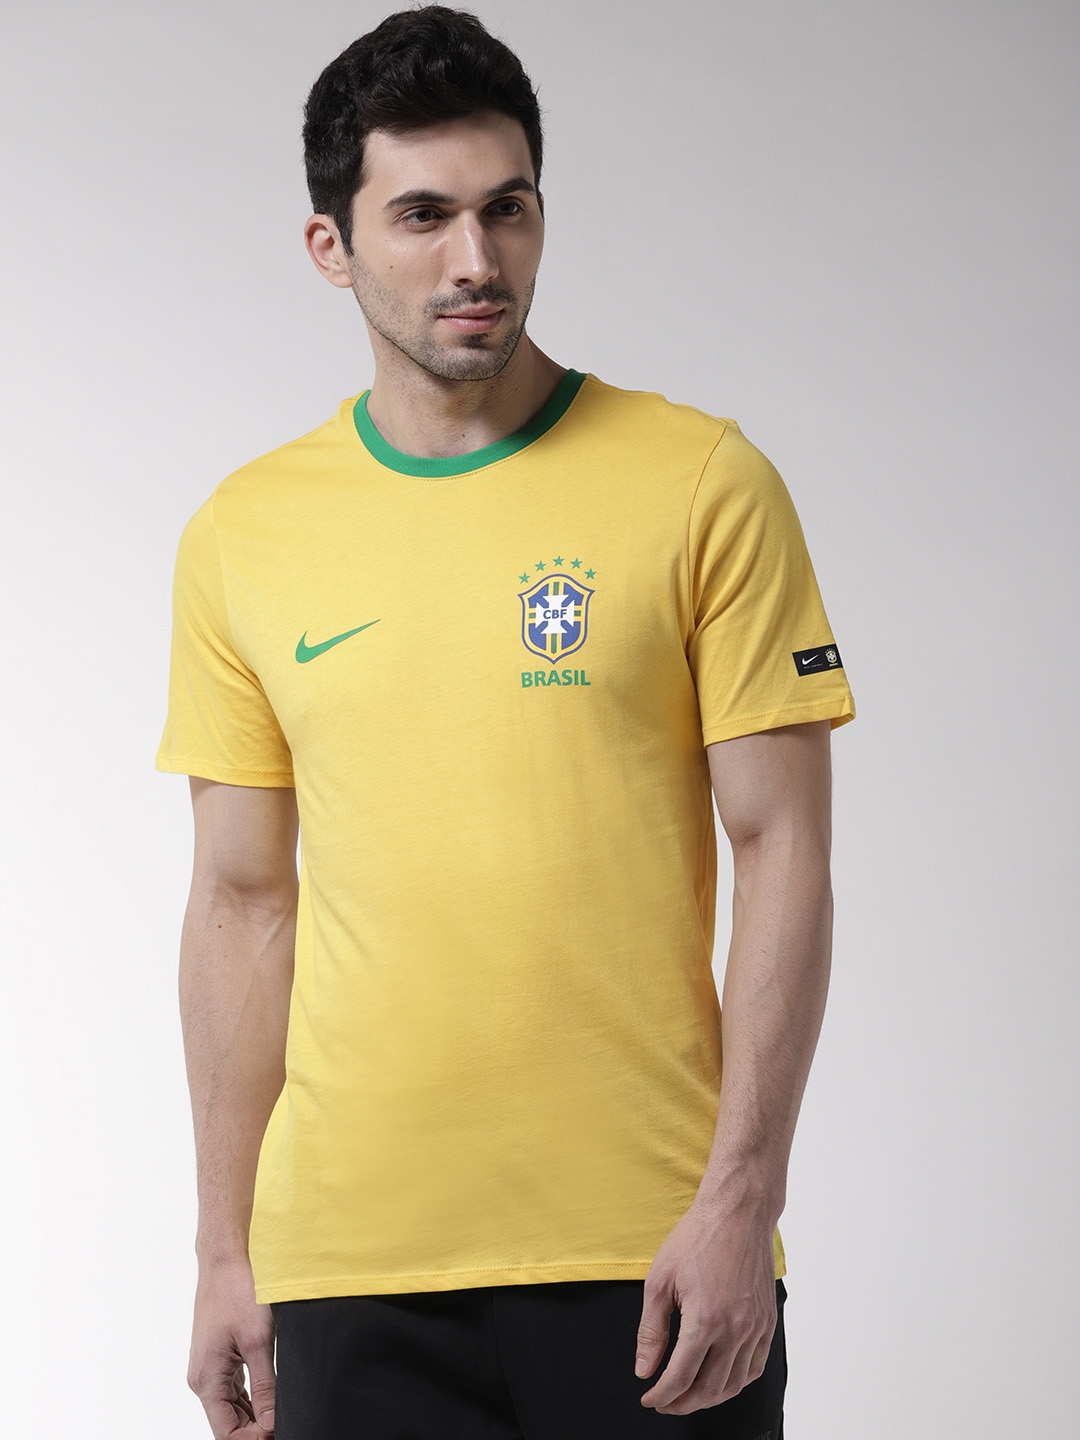 https://assets.myntassets.com/h_1440,q_100,w_1080/v1/assets/images/4029230/2018/11/14/4ffb25af-4c17-4dd1-9843-9103909bf4ba1542196584761-Nike-Men-Yellow-Brazil-M-NK-T-shirt-3941542196584600-1.jpg